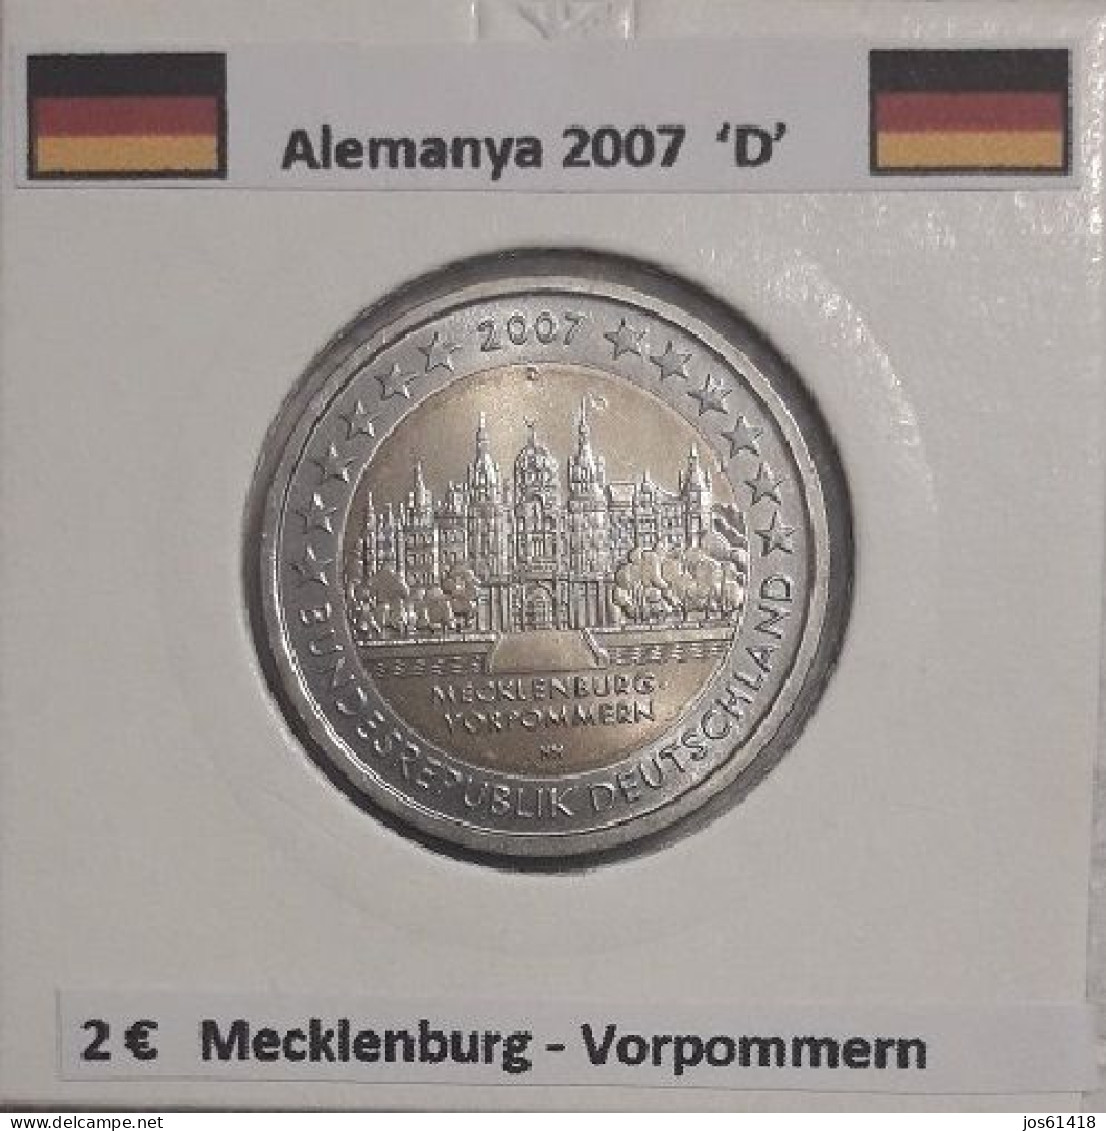 2 Euros Alemania / Germany 2007 Mecklenburg-Vorpommern  D O G Sin Circular - Allemagne